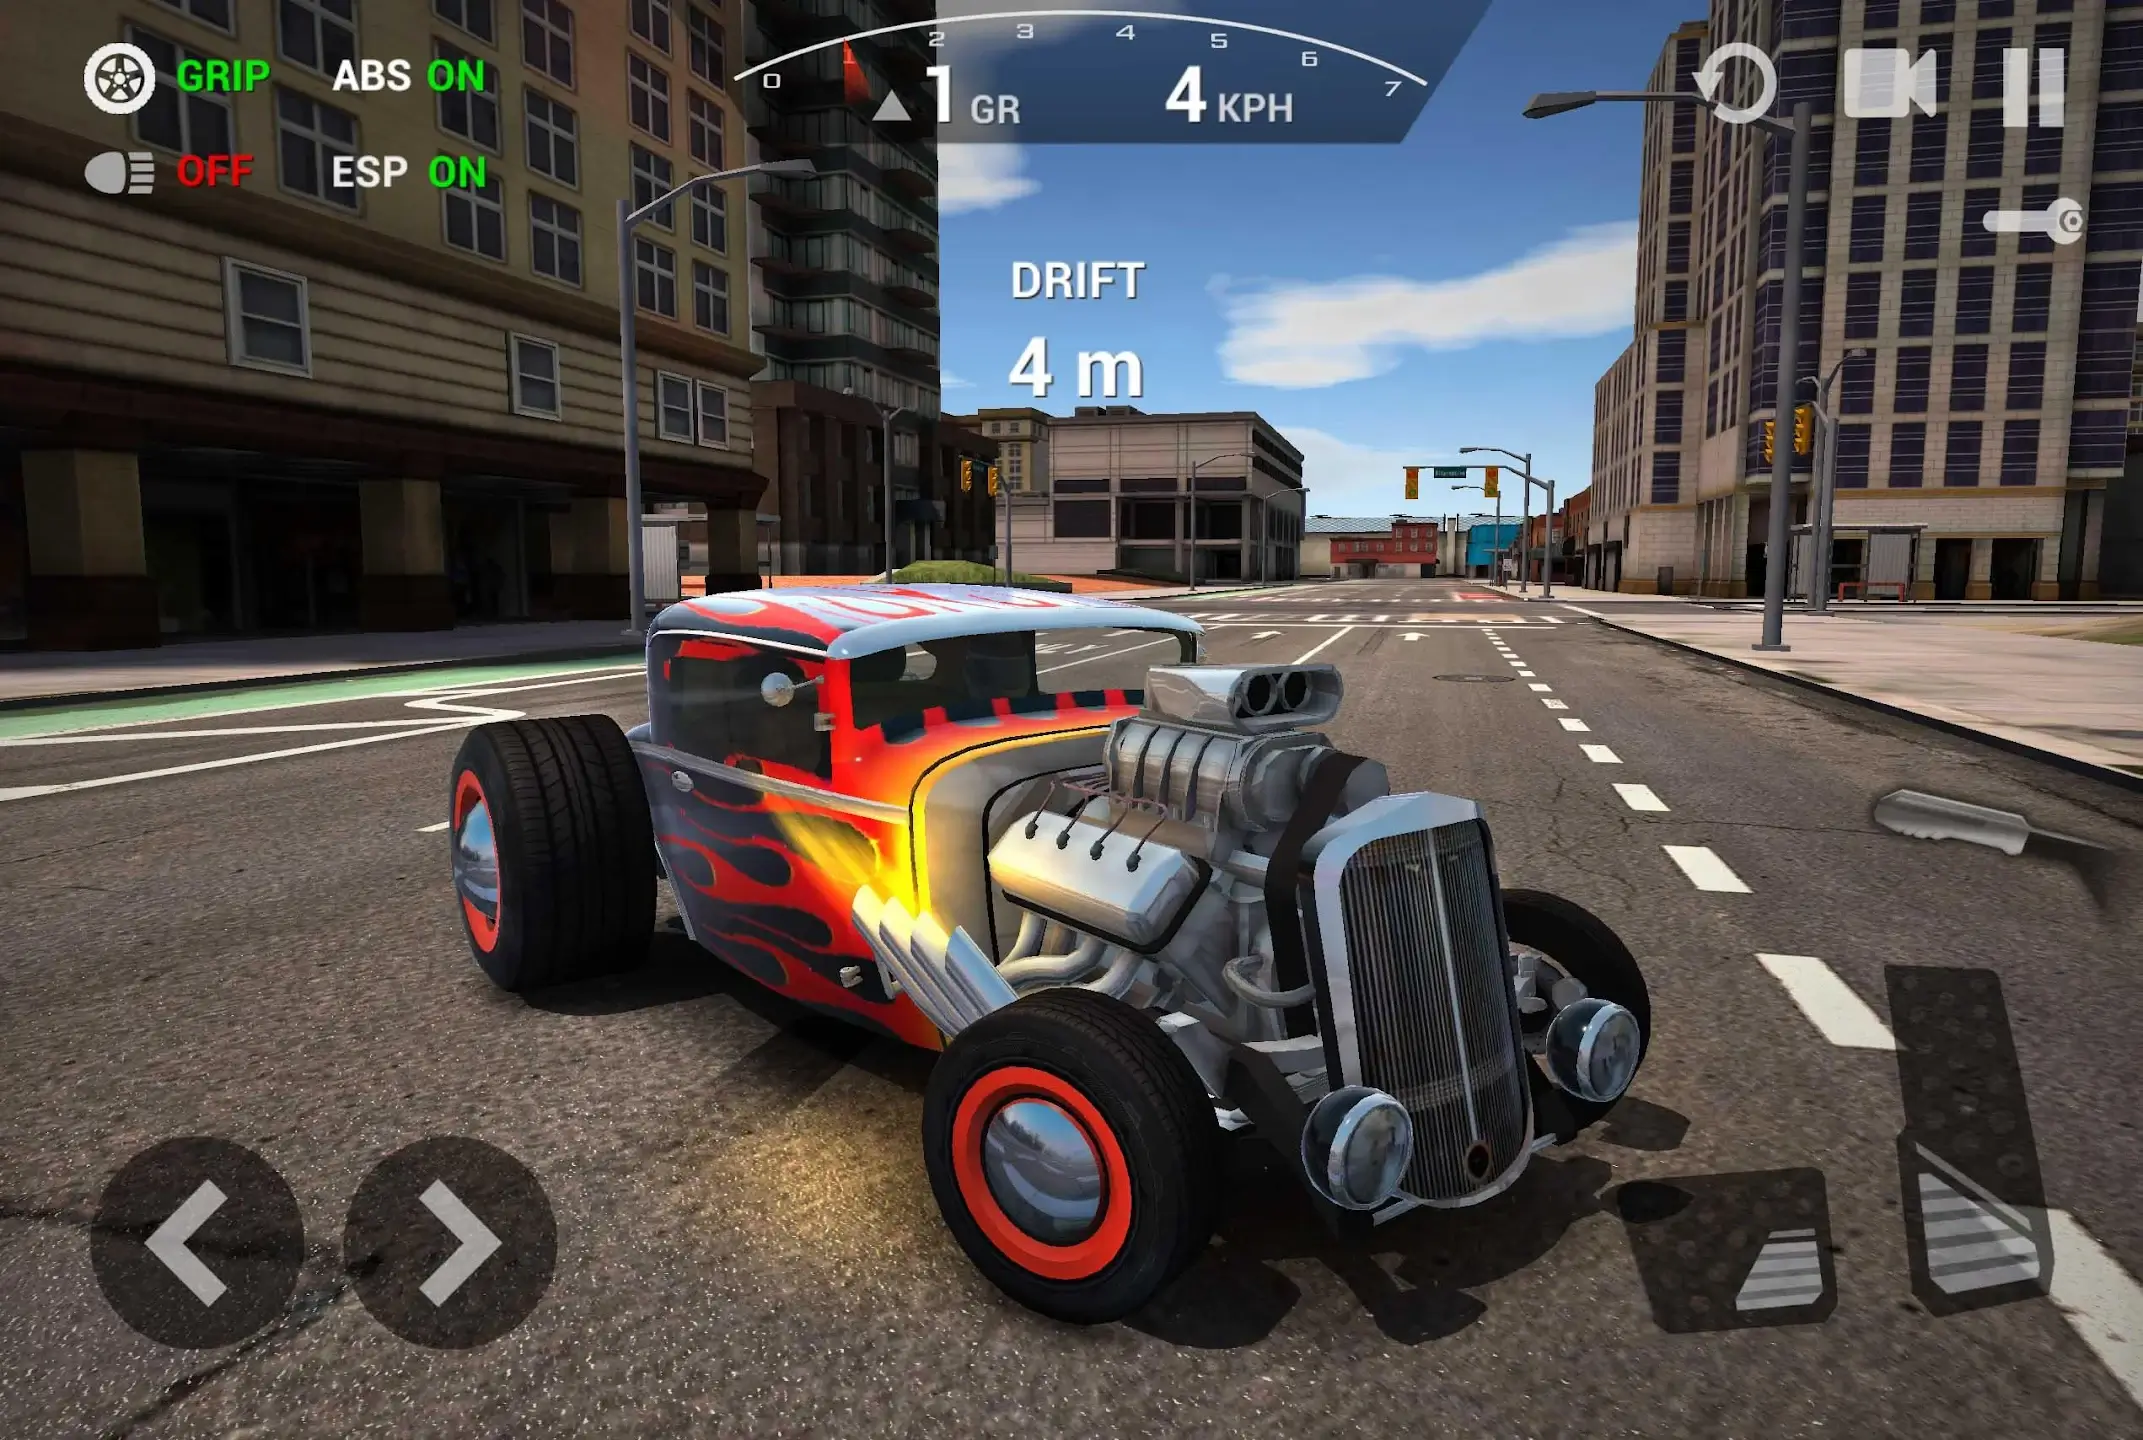 Ultimate Car Driving Simulator Apk Mod Dinheiro Infinito Download Mediafire  v7.11 - Goku Play Games